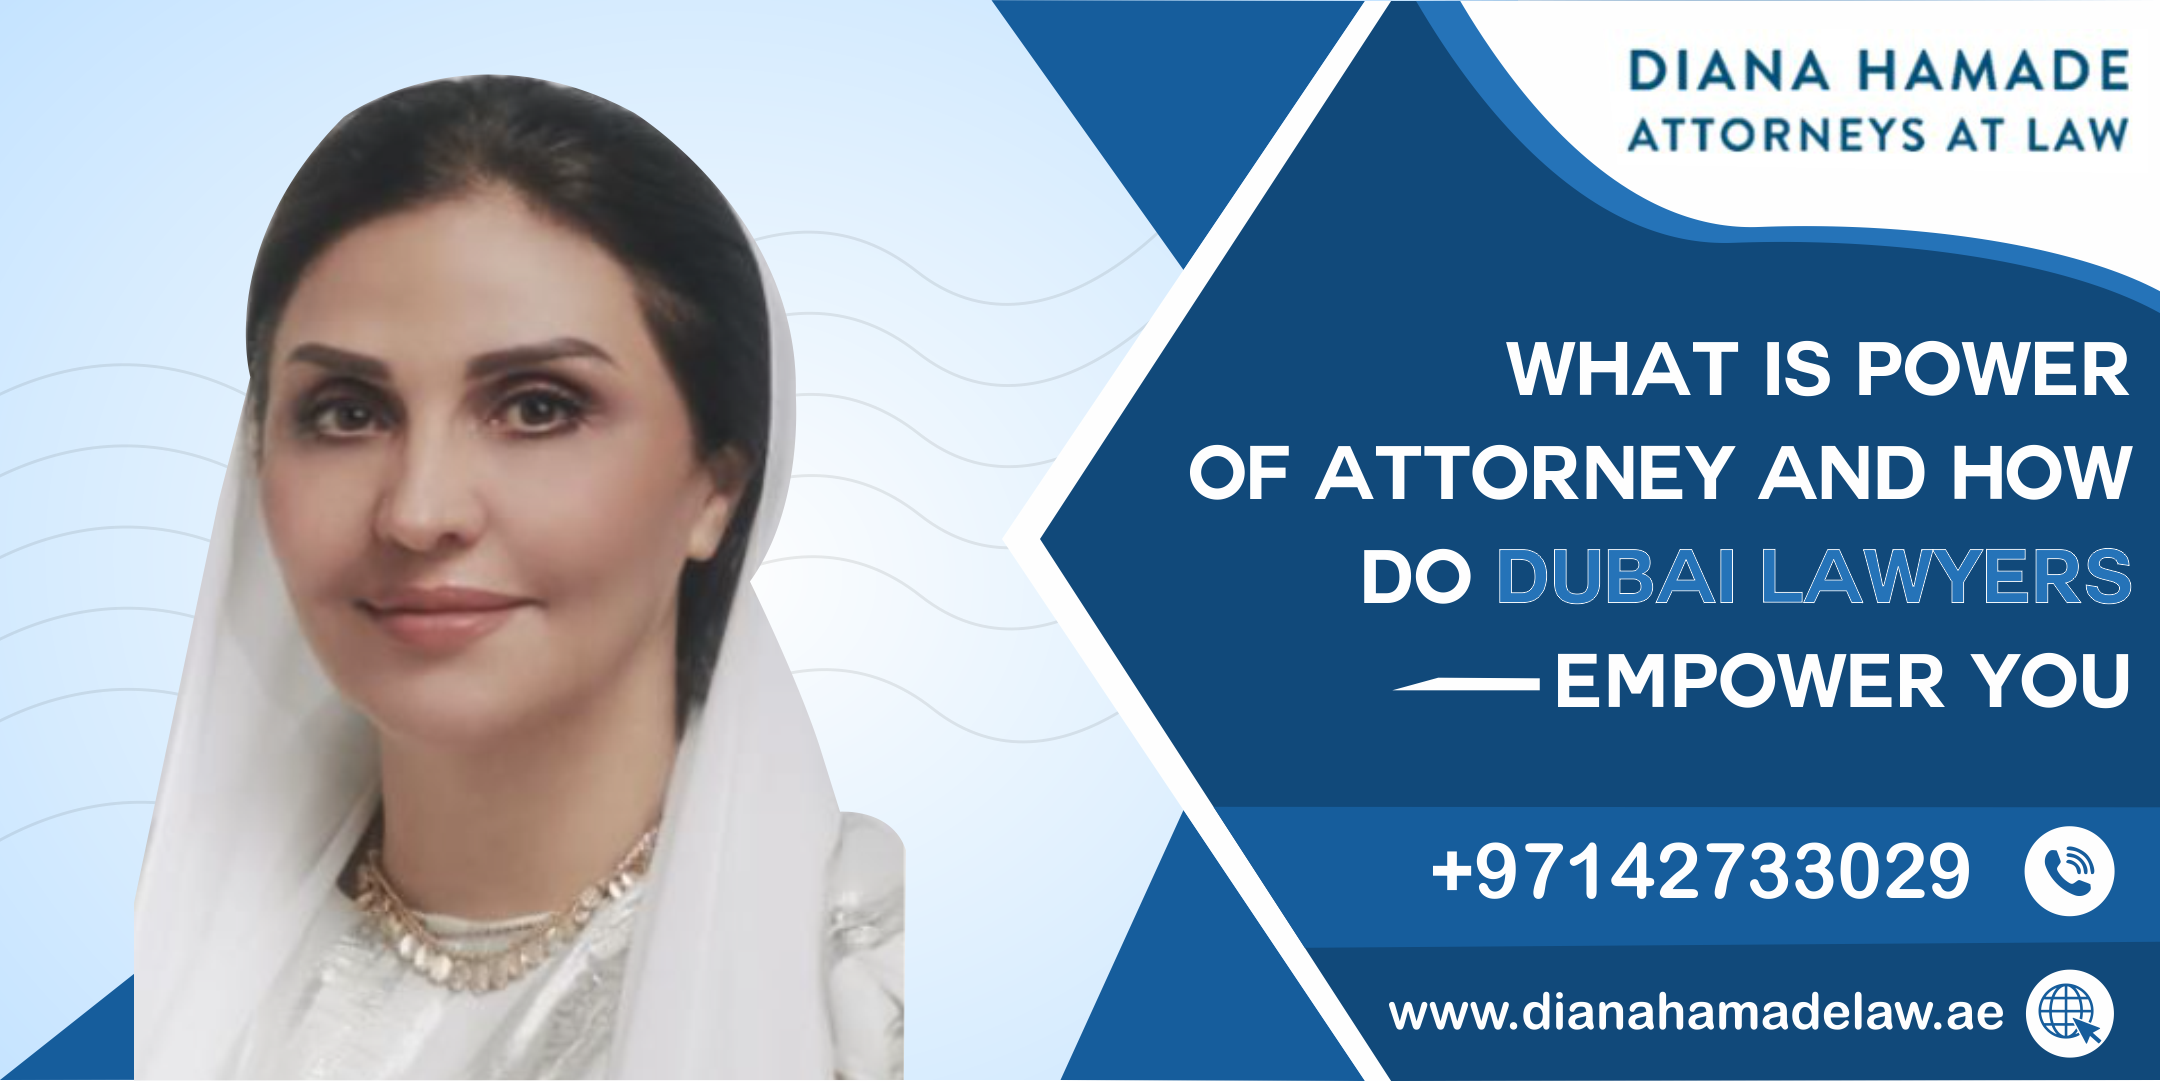 How do Dubai Lawyers Empower You?